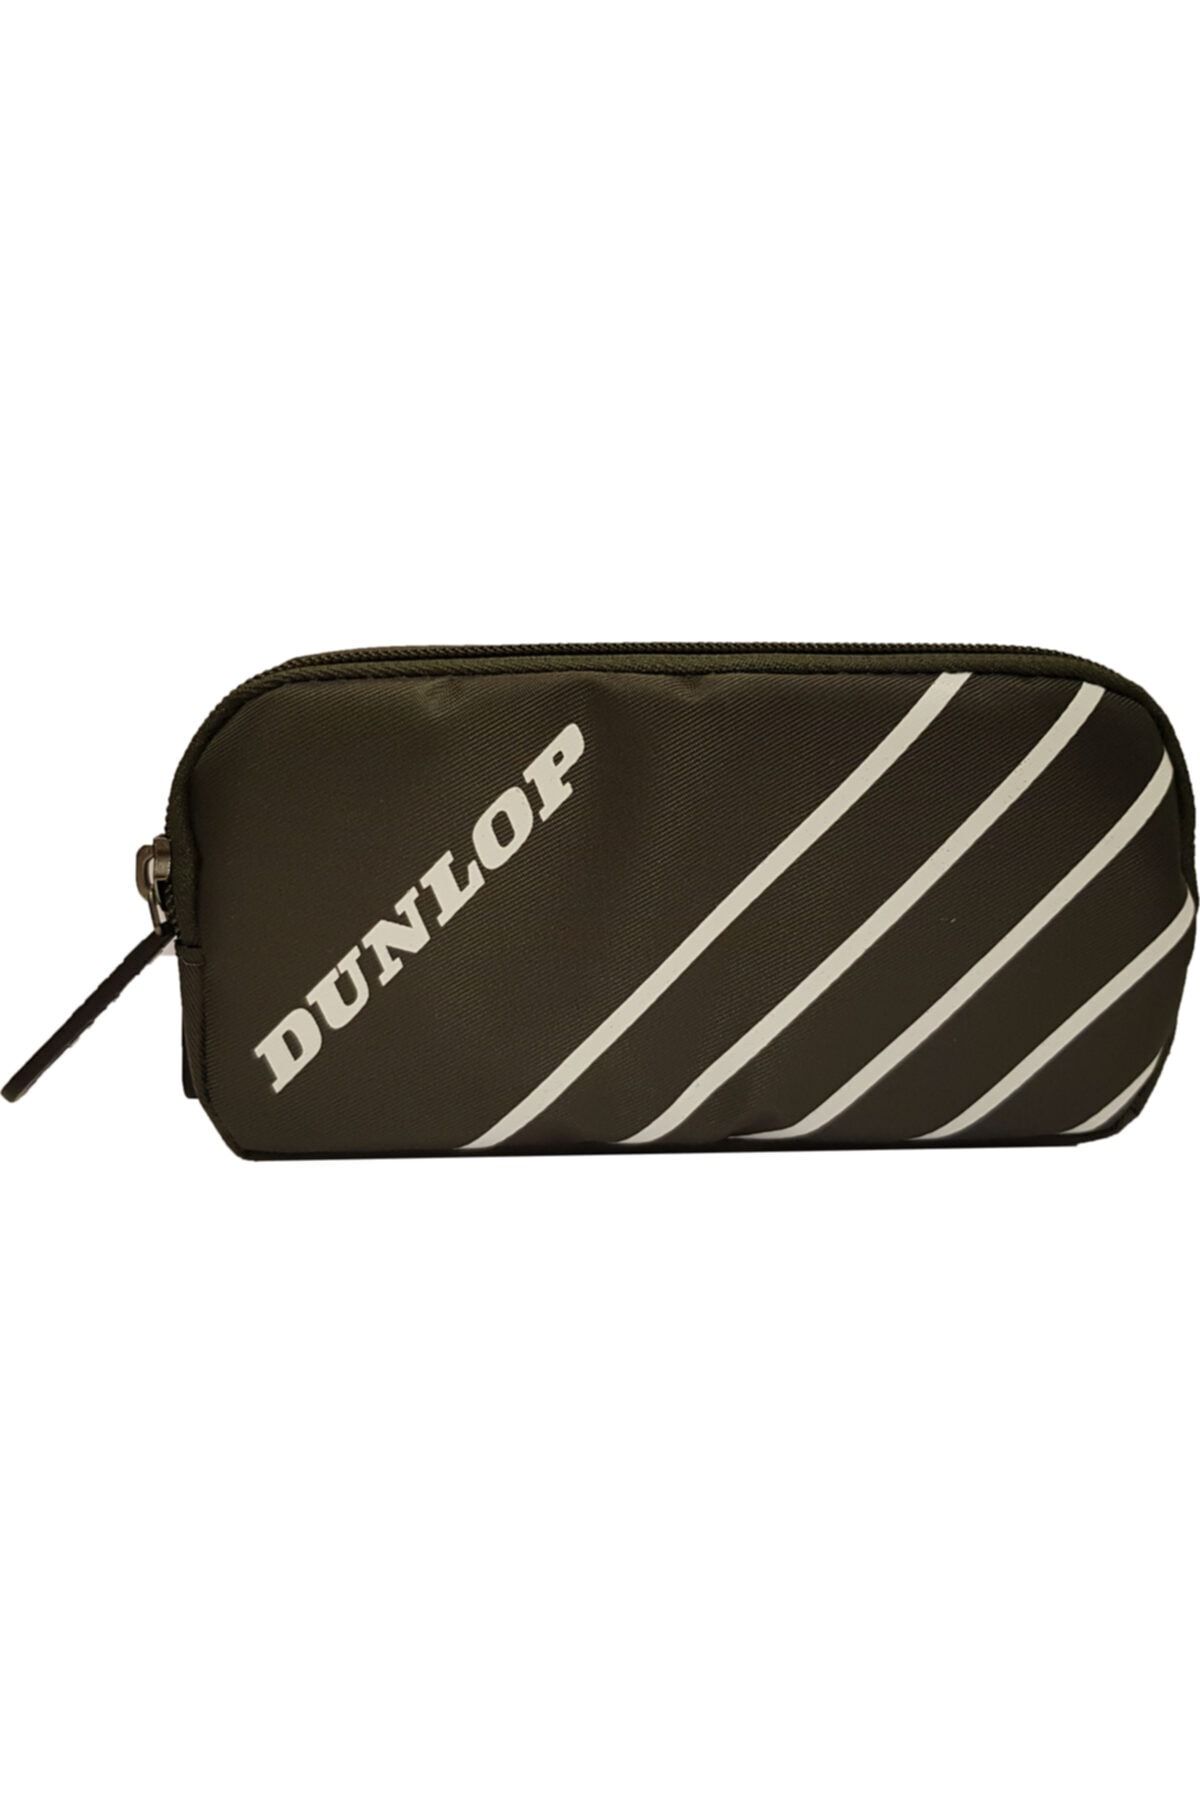 Dunlop Dpklk20505 Kalem Kutusu